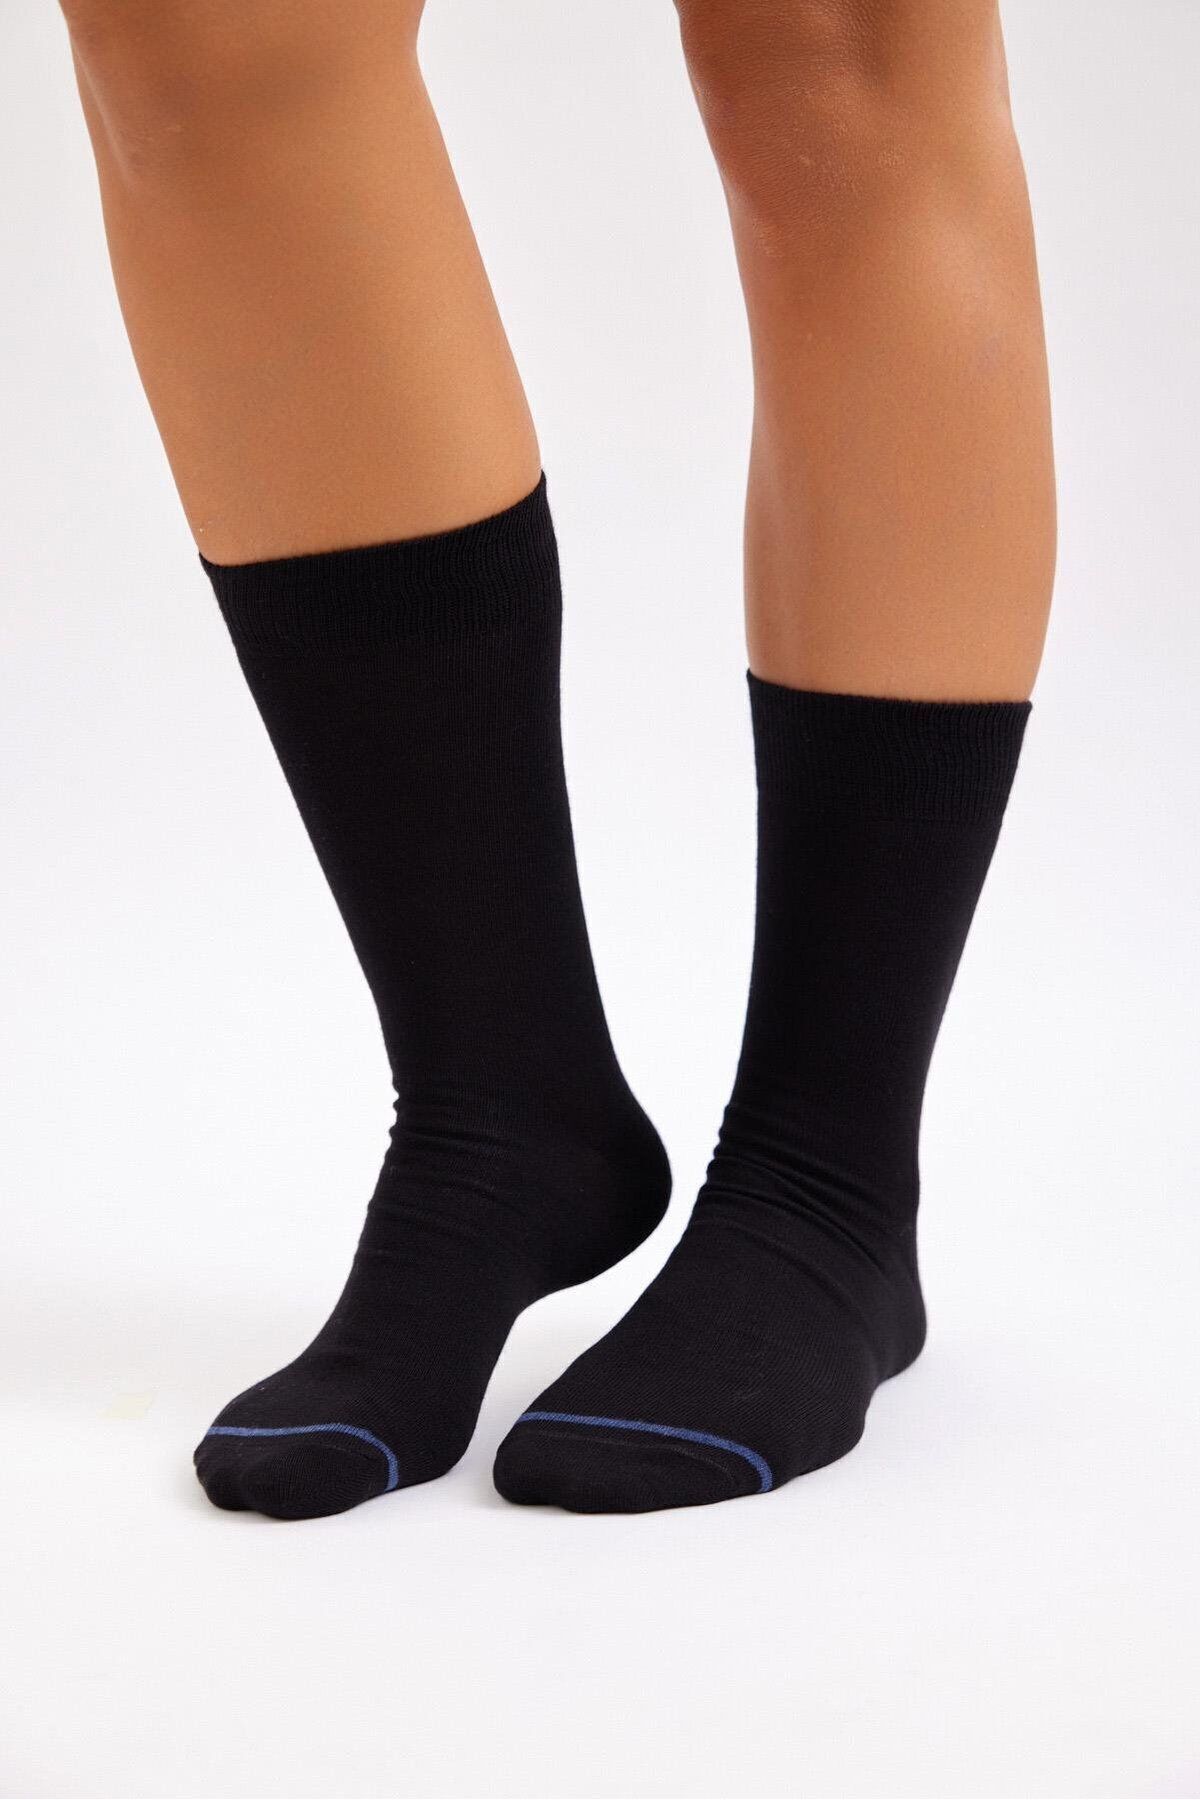 Katia & Bony Erkek Havlu Taban Uzun Konçlu Soket Çorap Lacivert/siyah